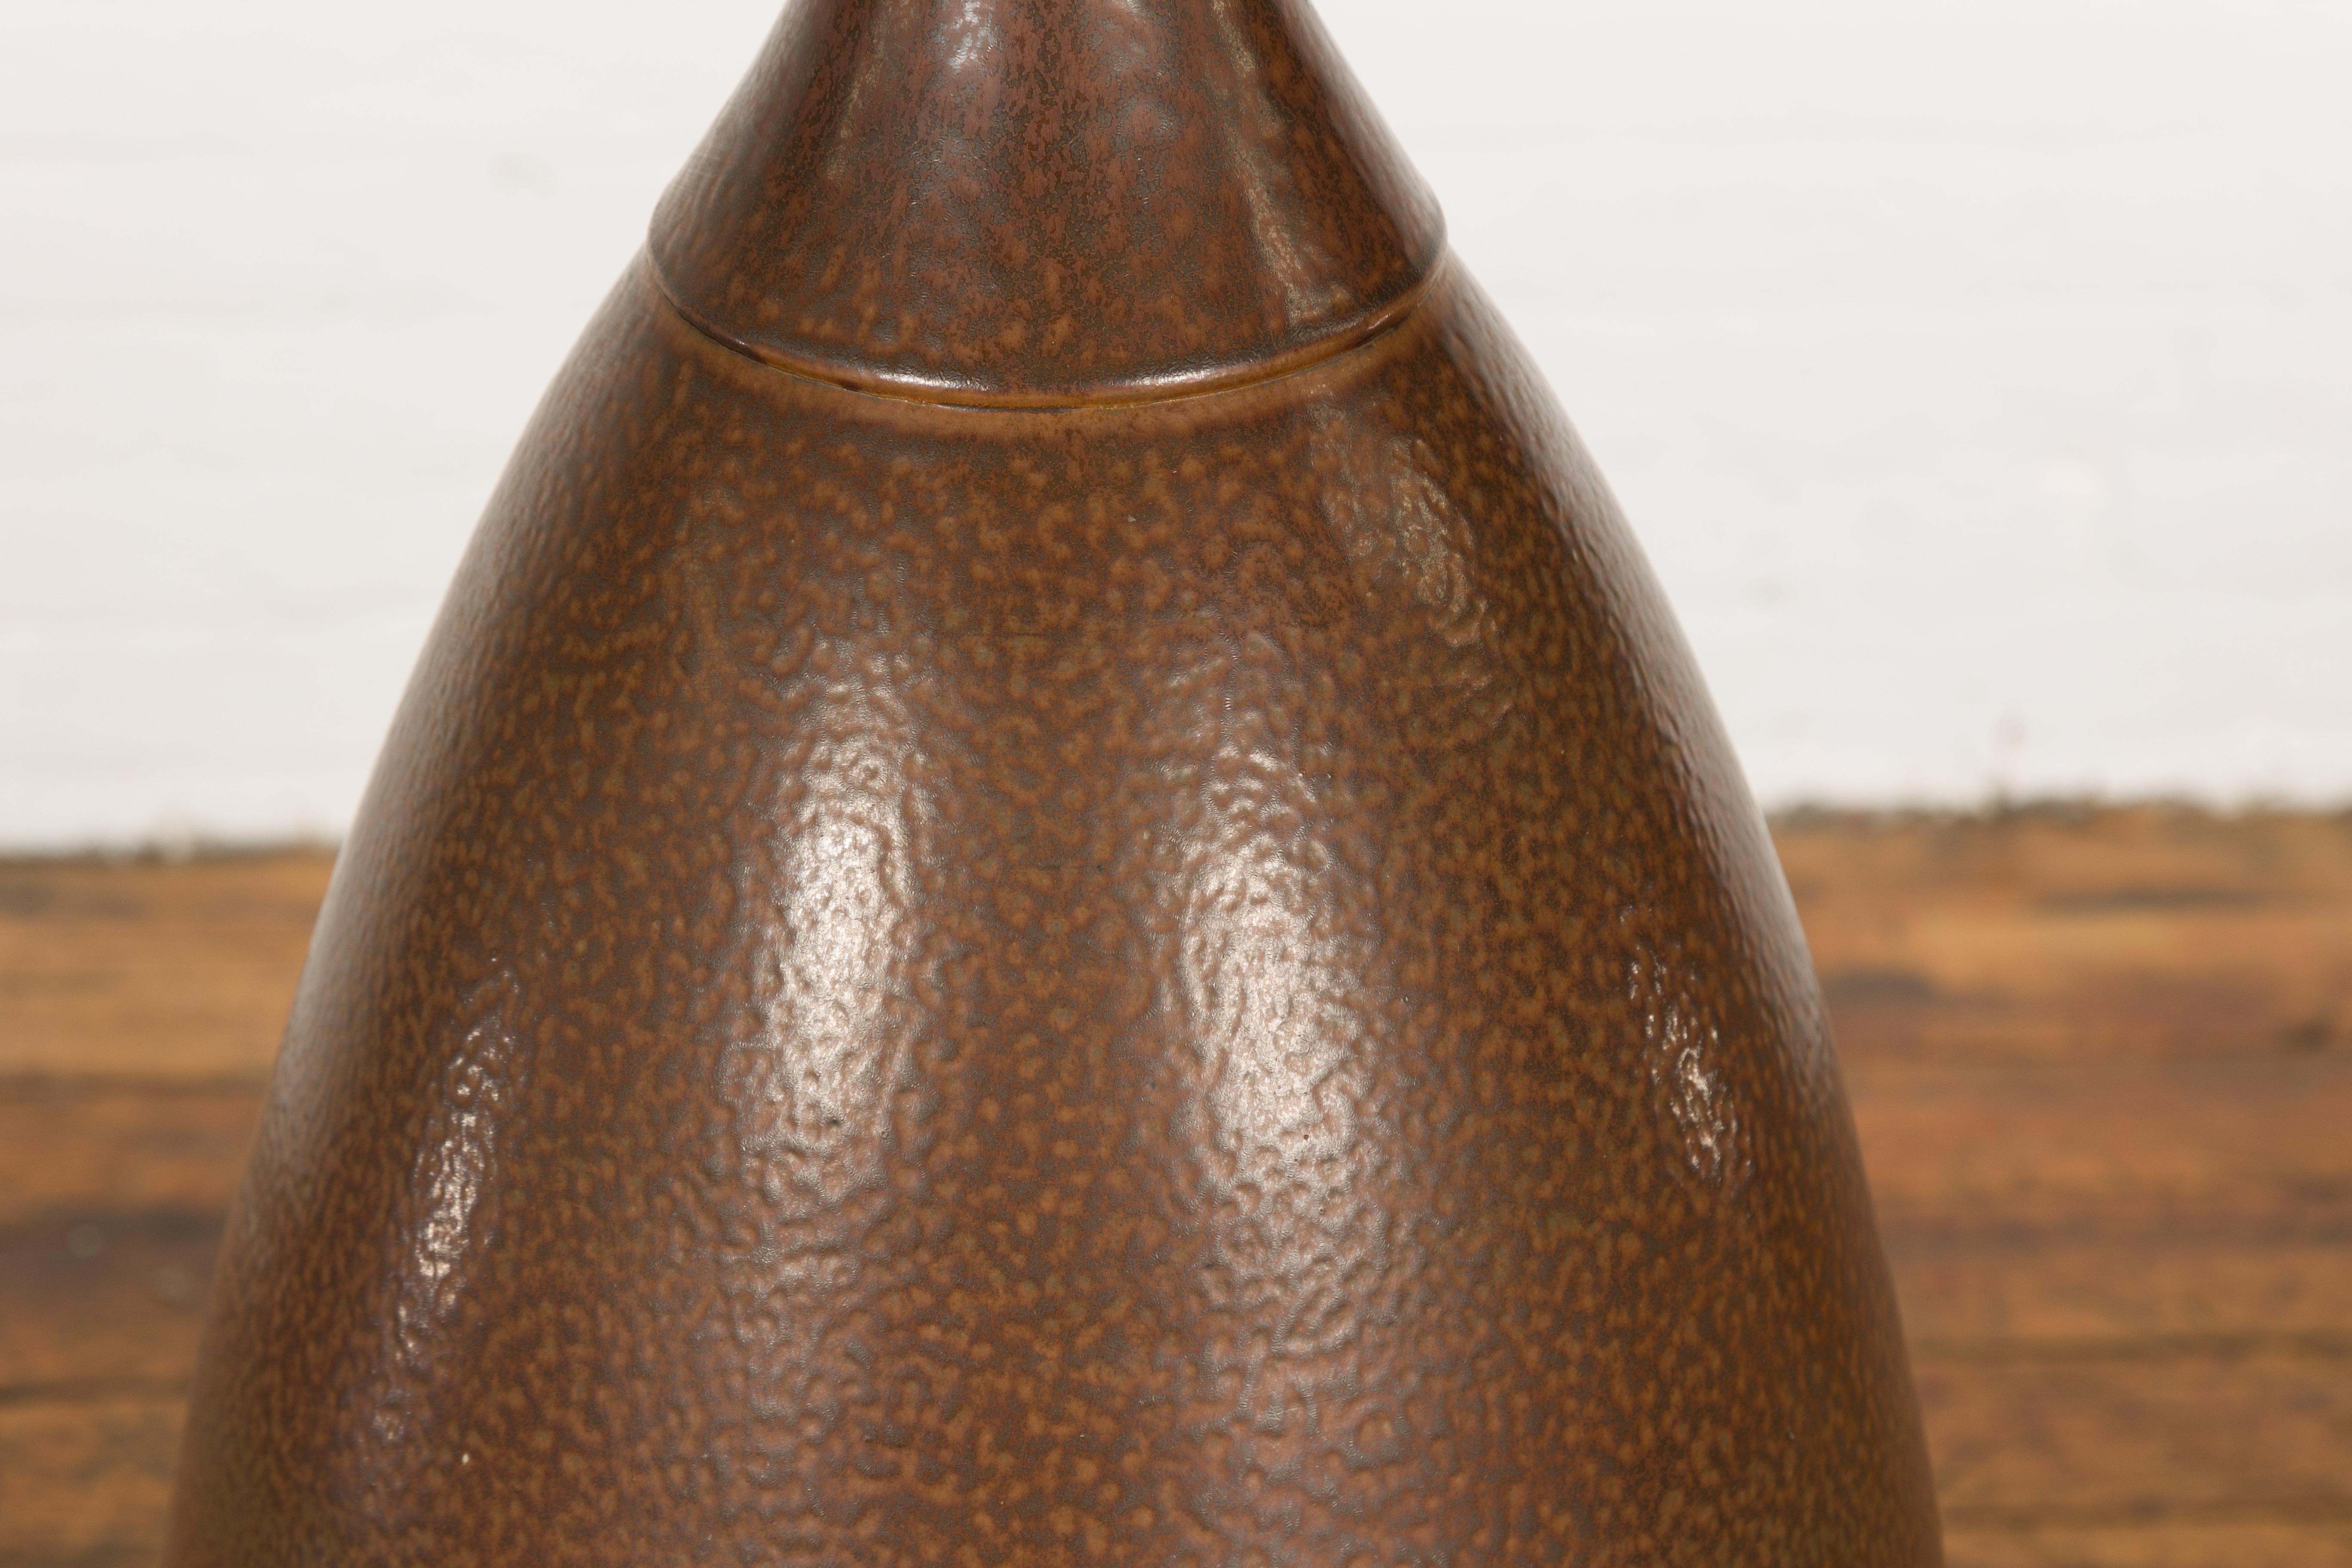 Large Brown Glazed Ceramic Vase with Mottled Finish For Sale 1